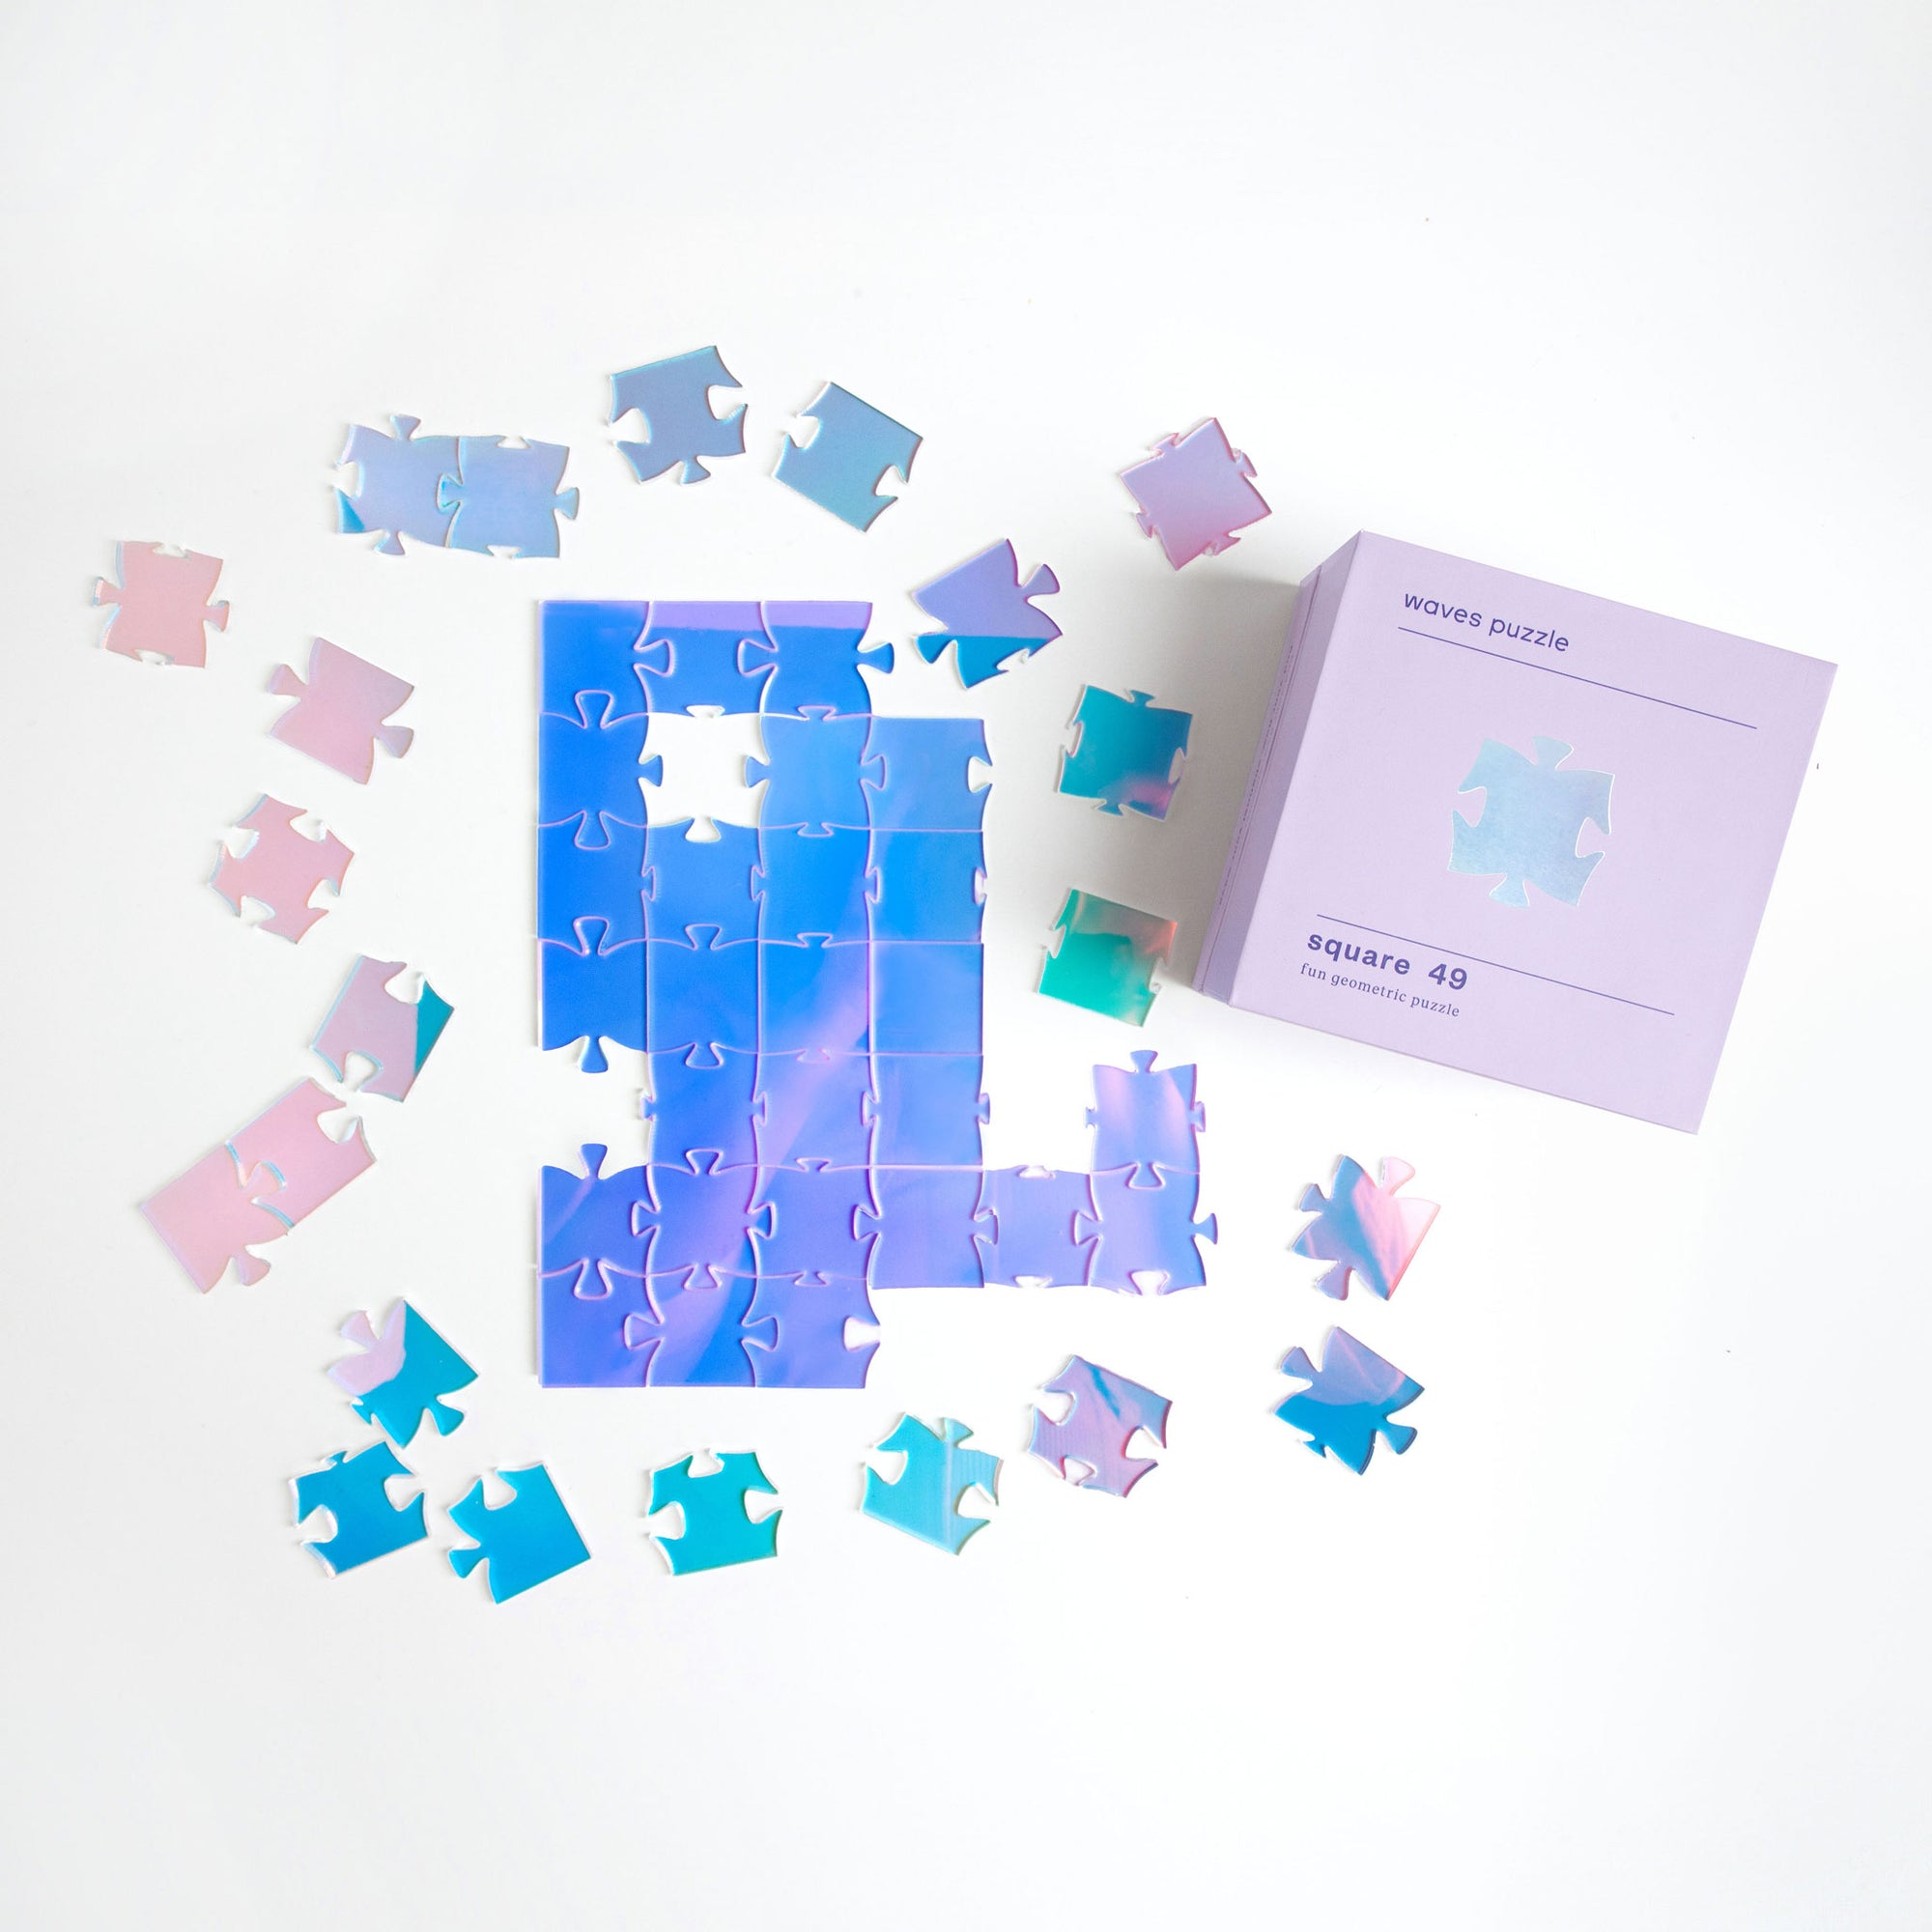 Square 49 - Iridescent Puzzle